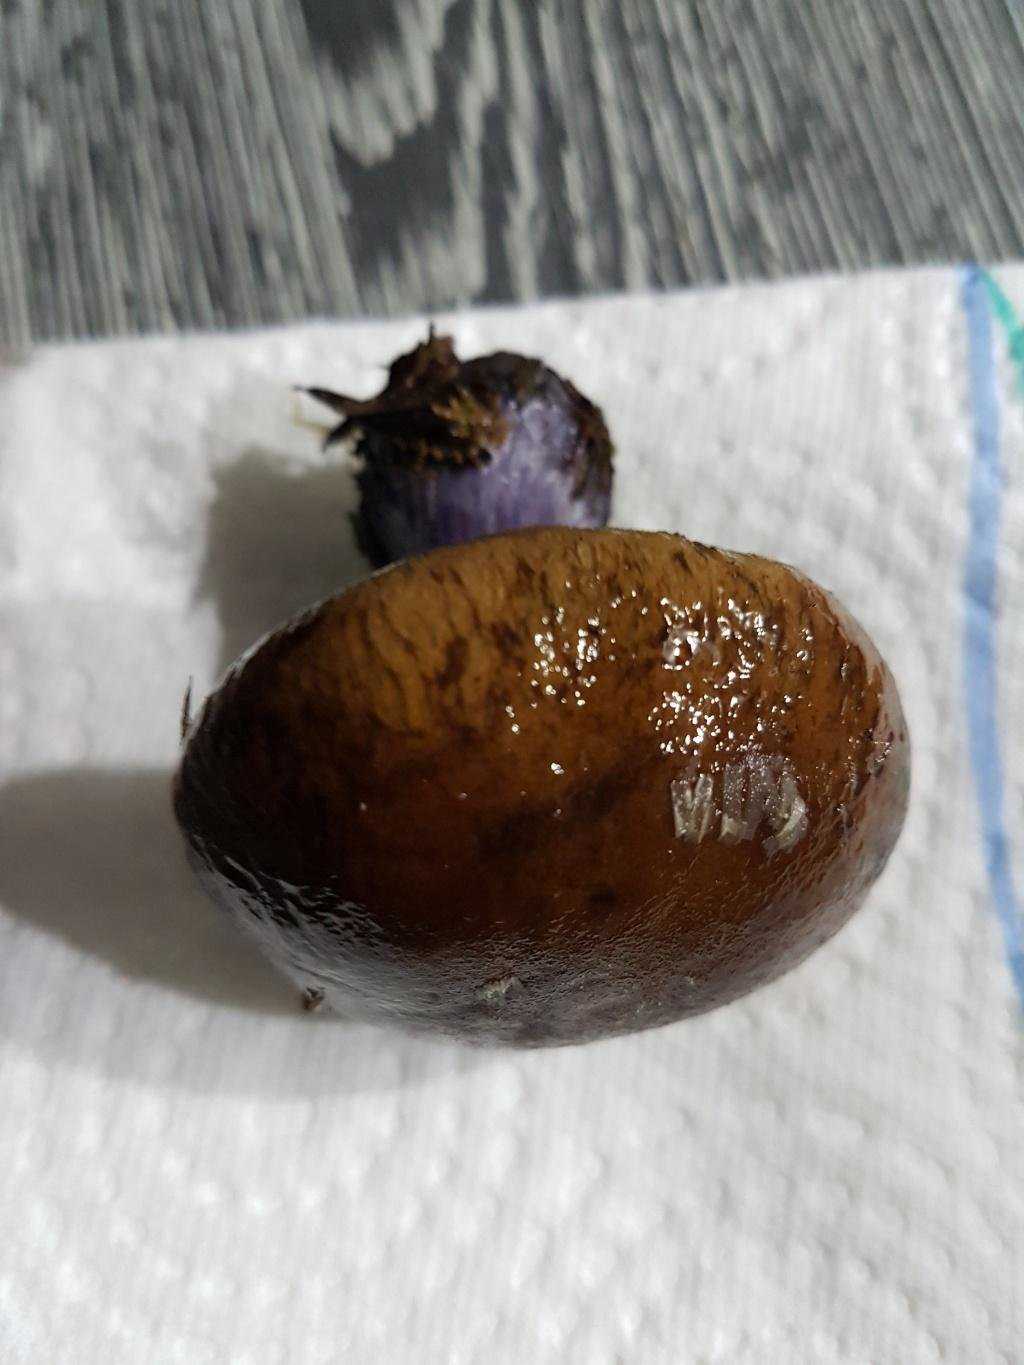 Фиолетовый гриб | приокско-террасный государственный природный биосферный заповедник